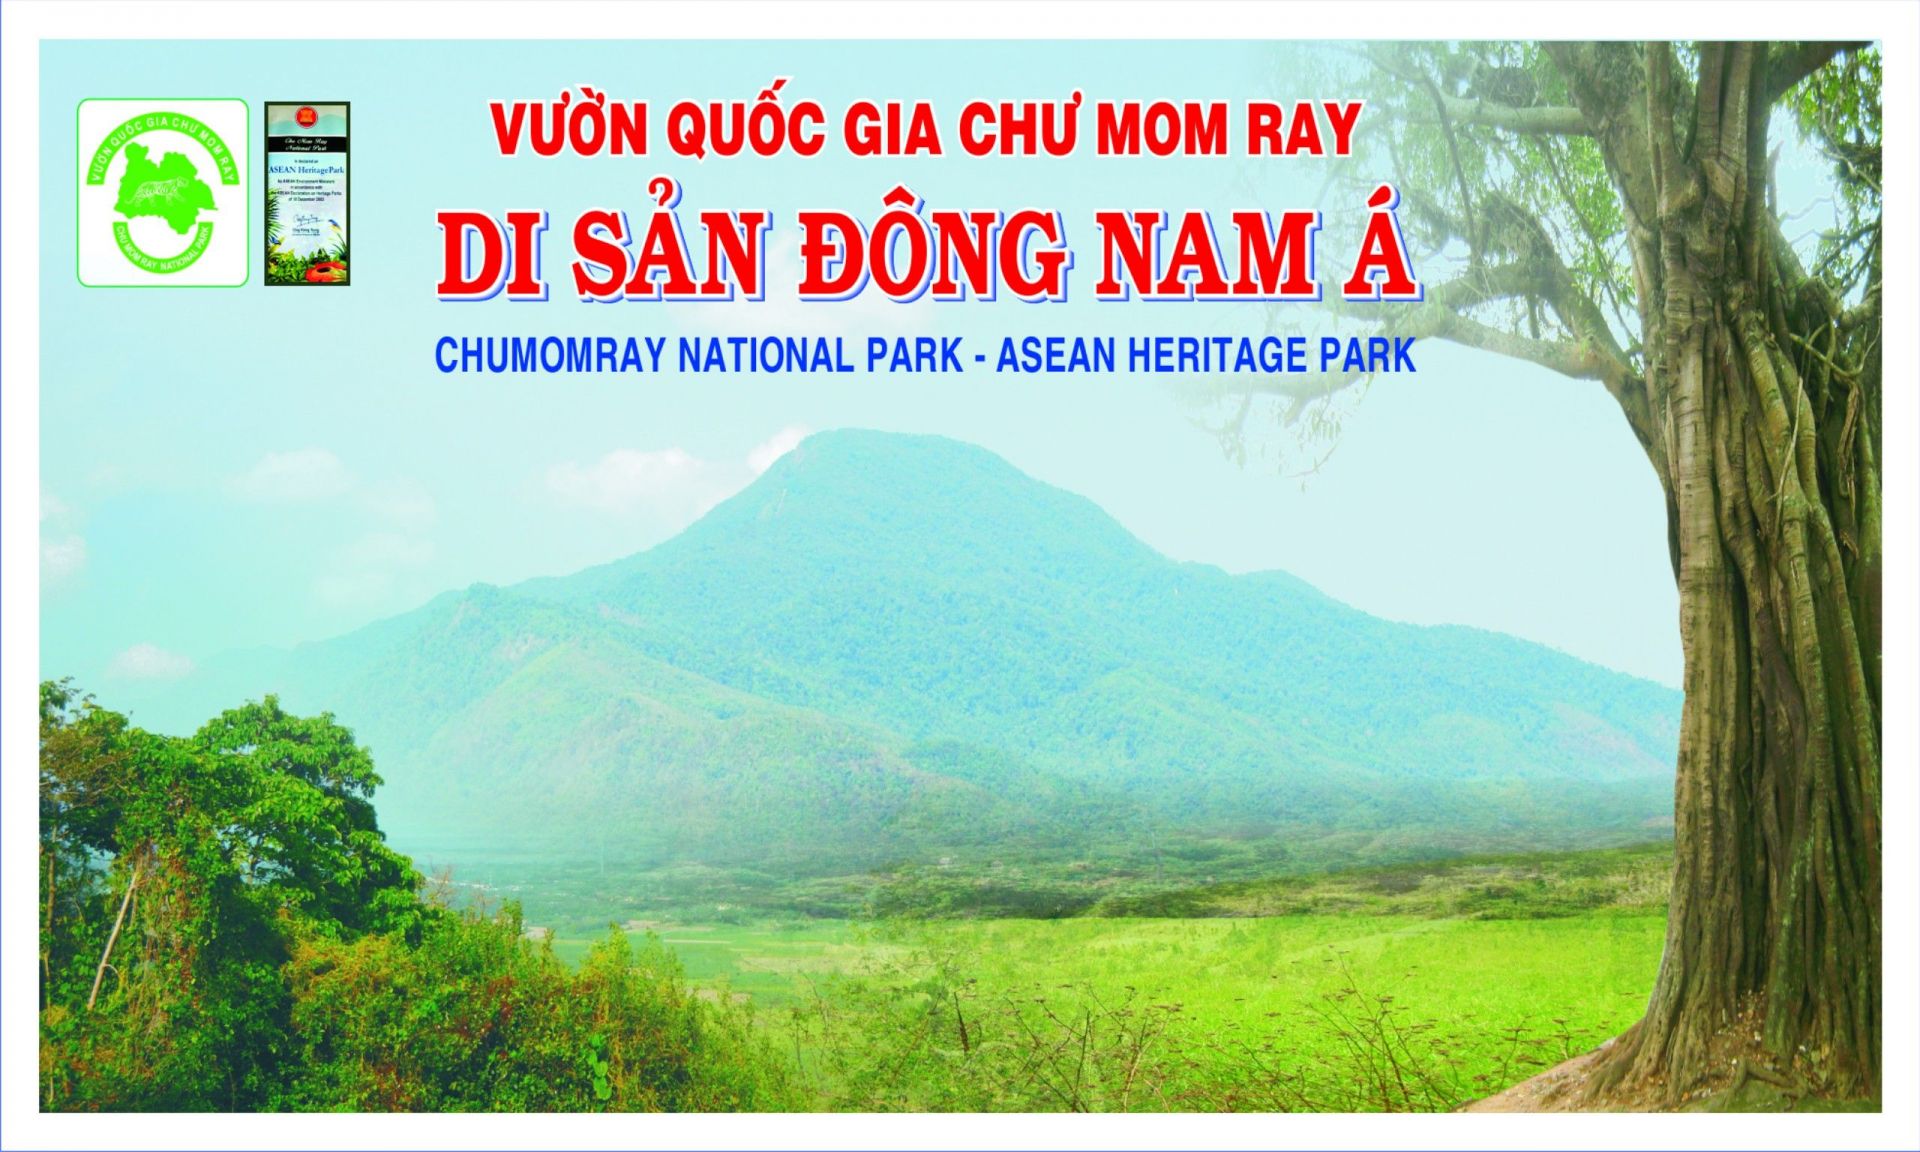 Khu bảo tồn thiên nhiên Vườn quốc gia Chư Mom Ray nằm ở phía Bắc Tây Nguyên thuộc địa bàn tỉnh Kon Tum, có ranh giới giáp với Campuchia và Lào.